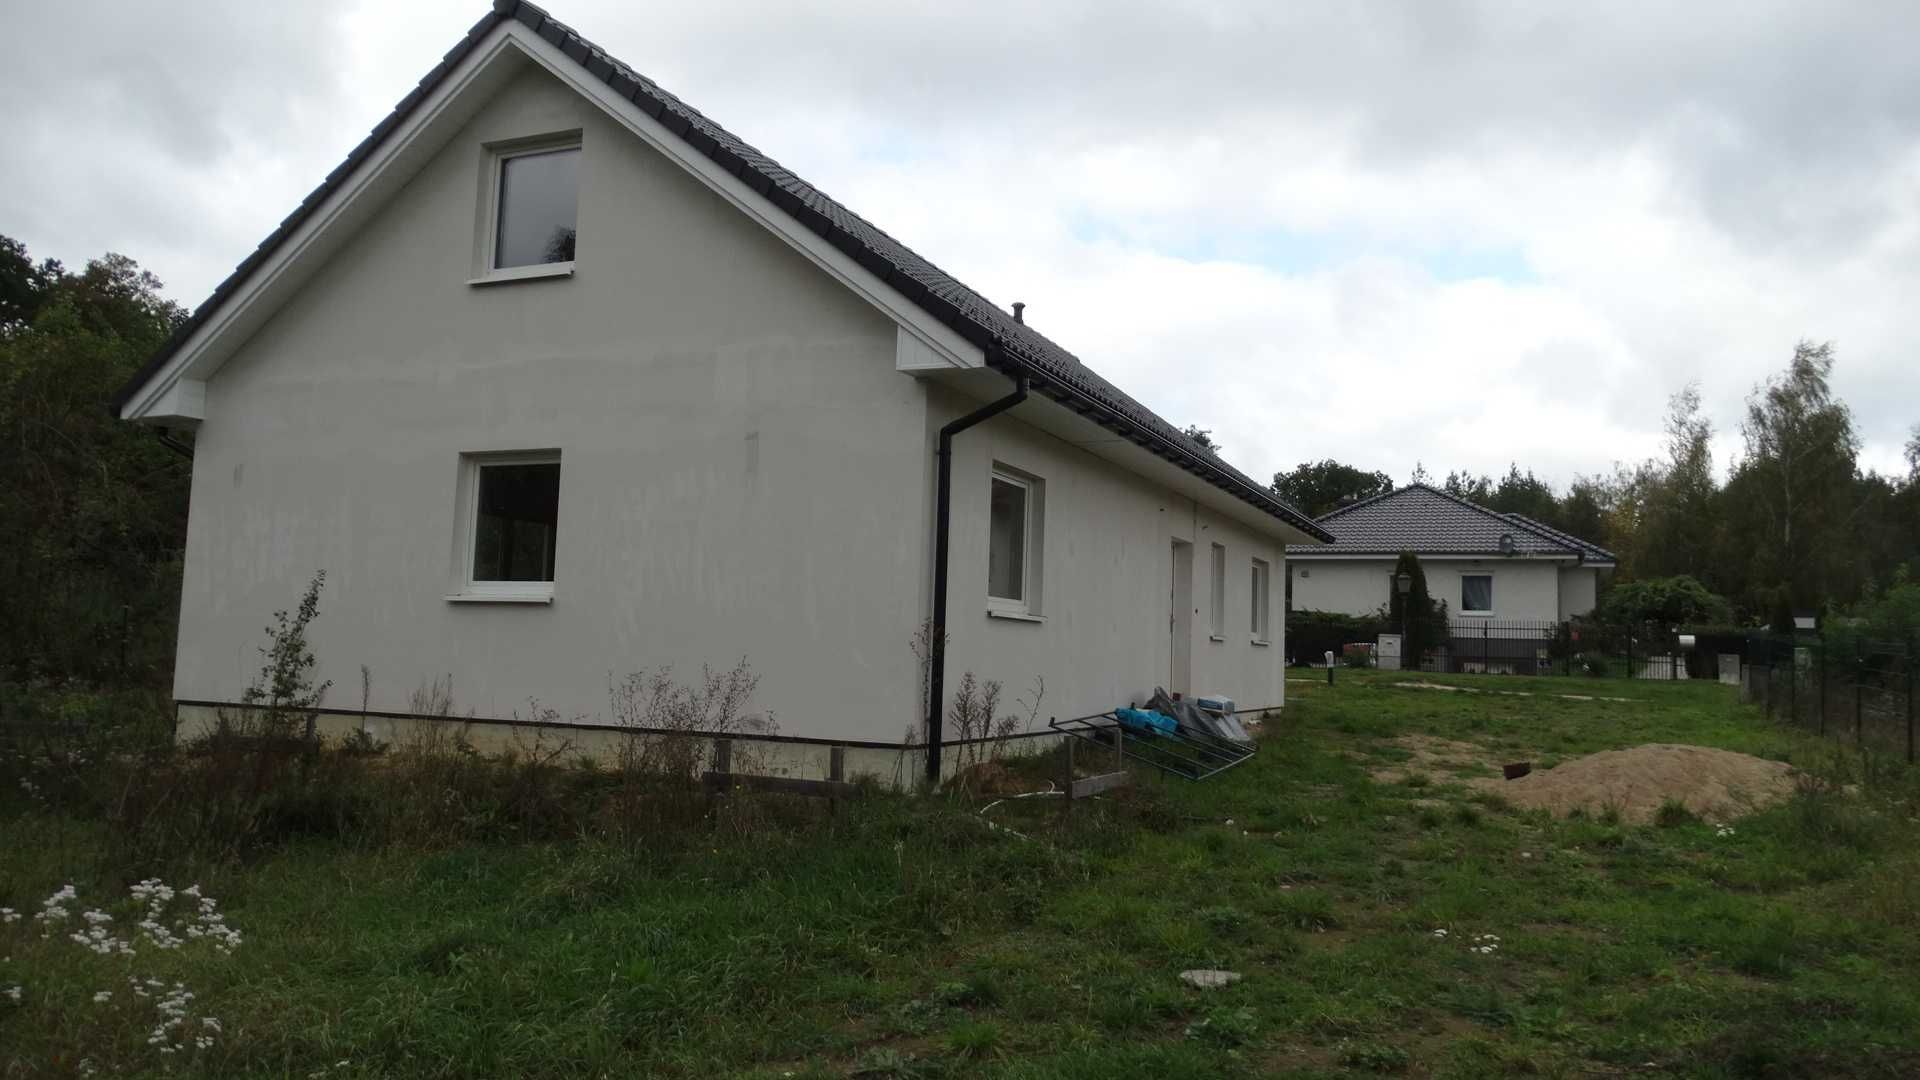 Dom jednorodzinny dowykonczenia w Lubniewicach